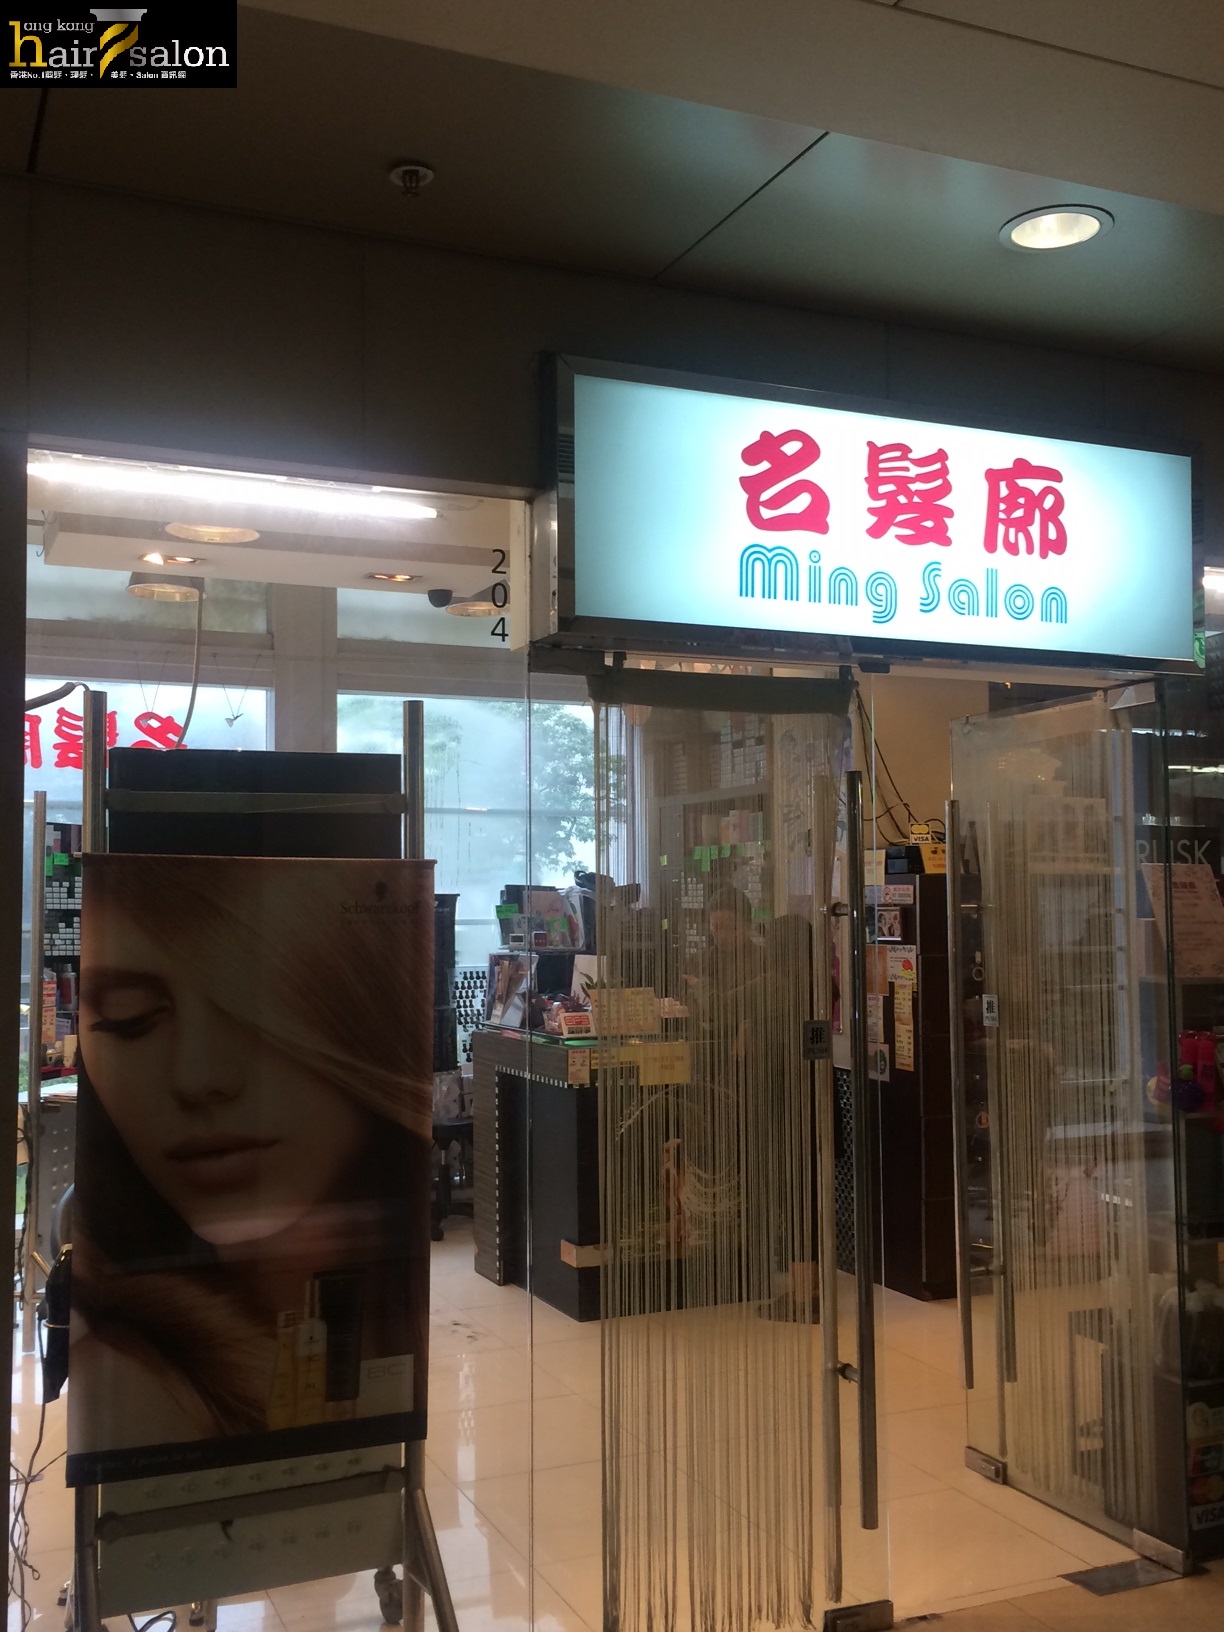 電髮/負離子: 名髮廊 Ming Salon (葵涌店)